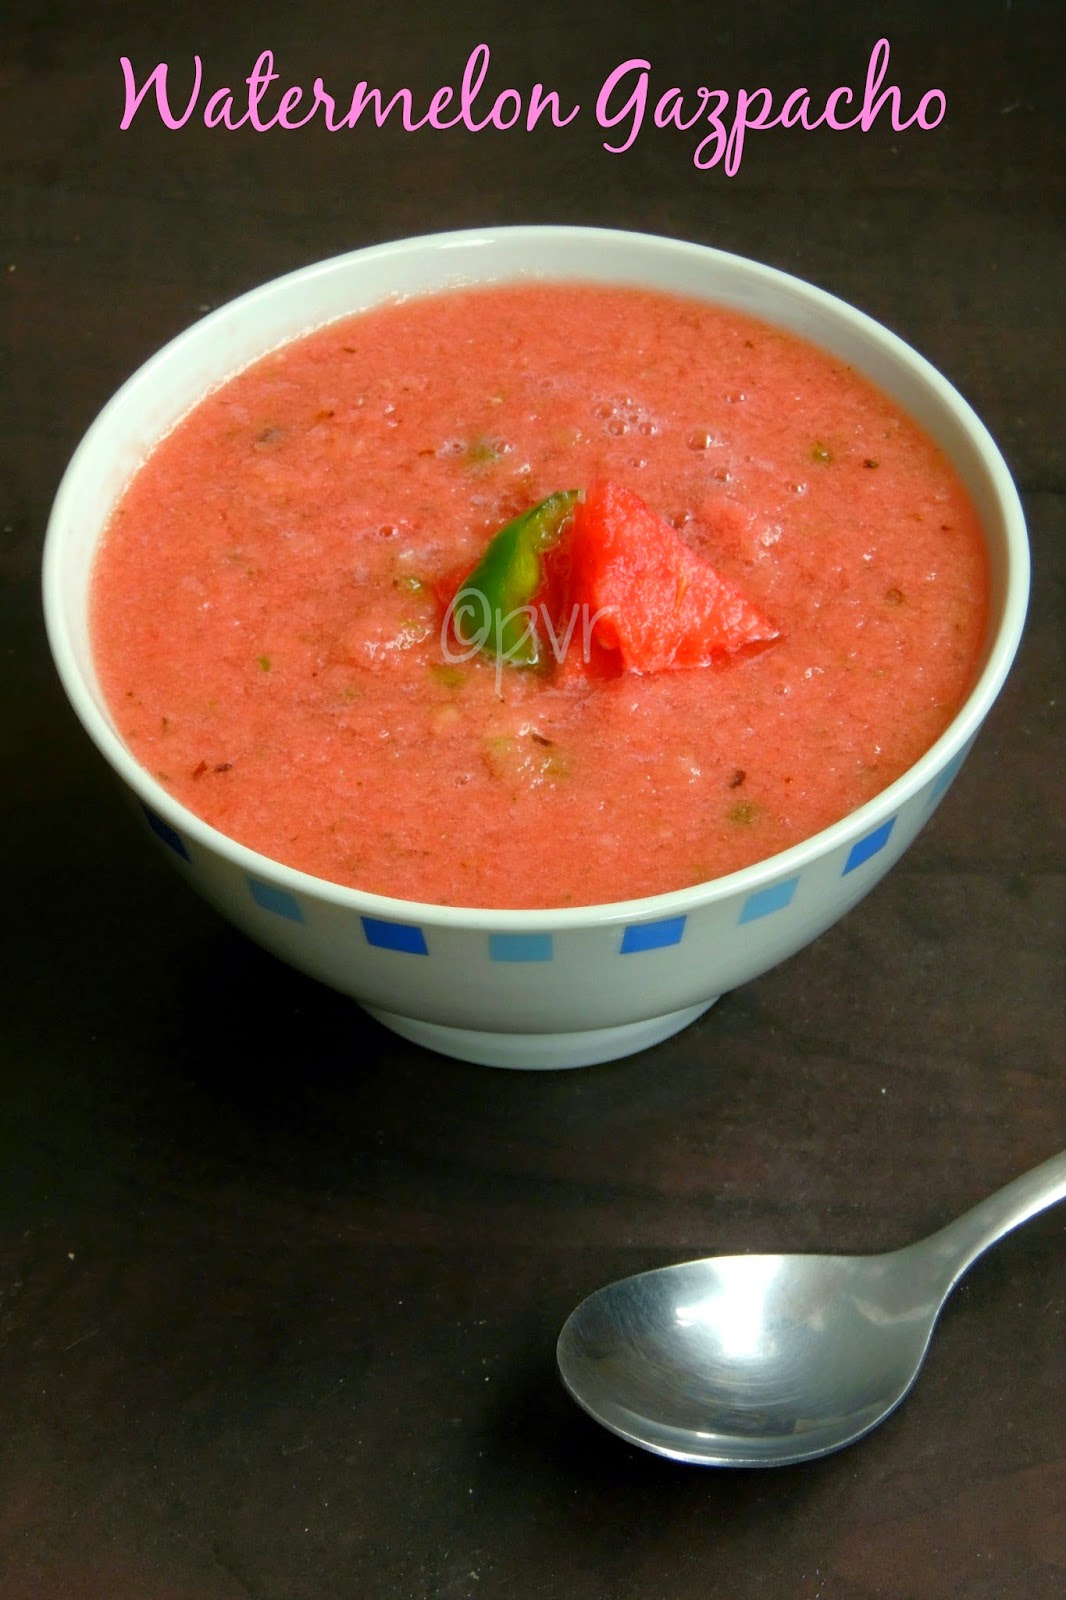 Watermelon gazpacho, watermelon cold soup